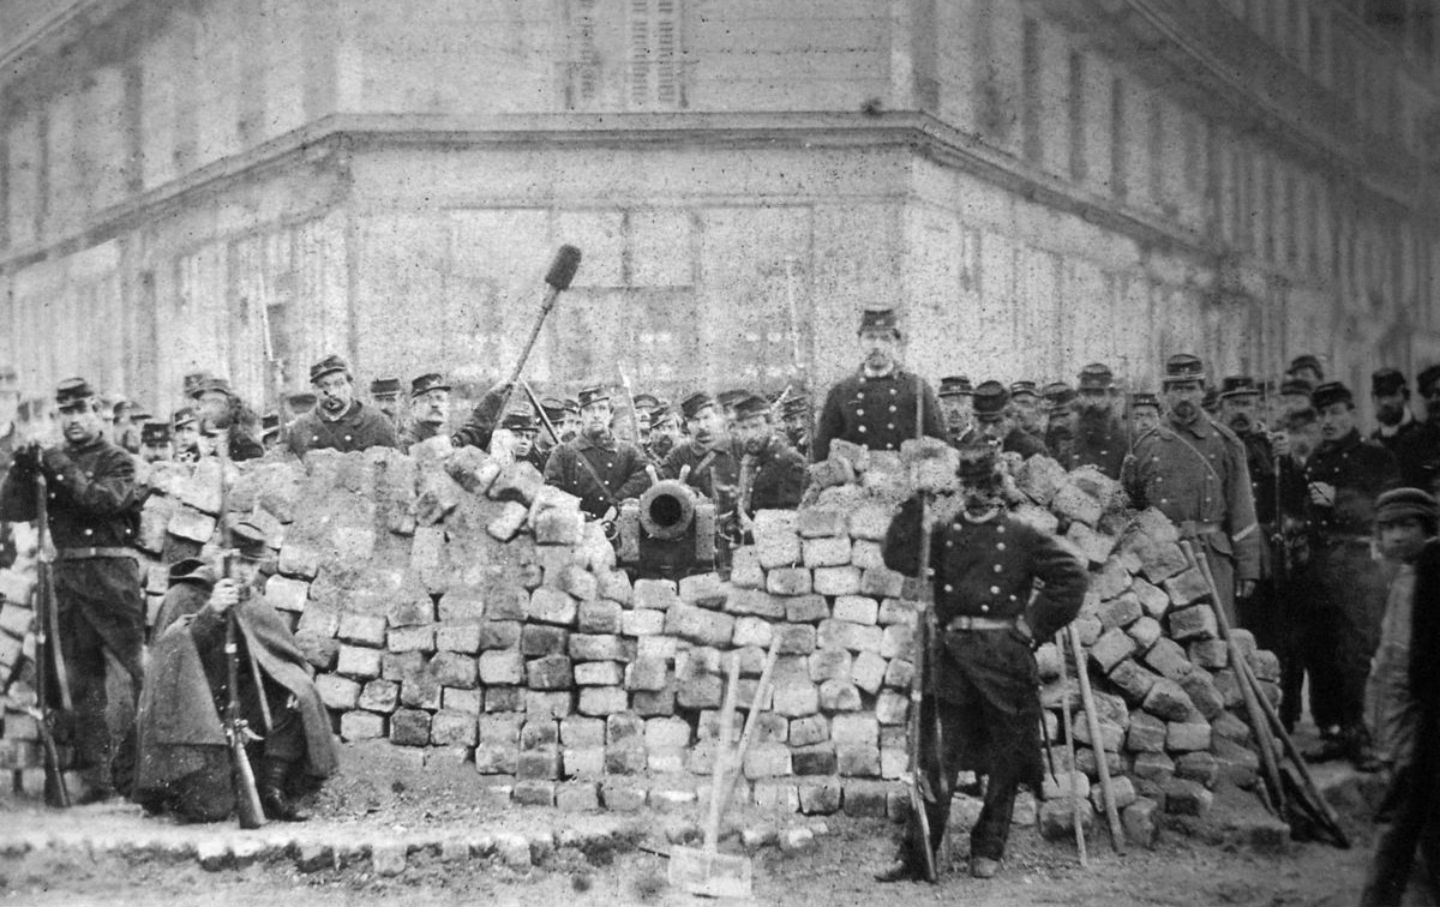 March 18, 1871: The Paris Commune is Established